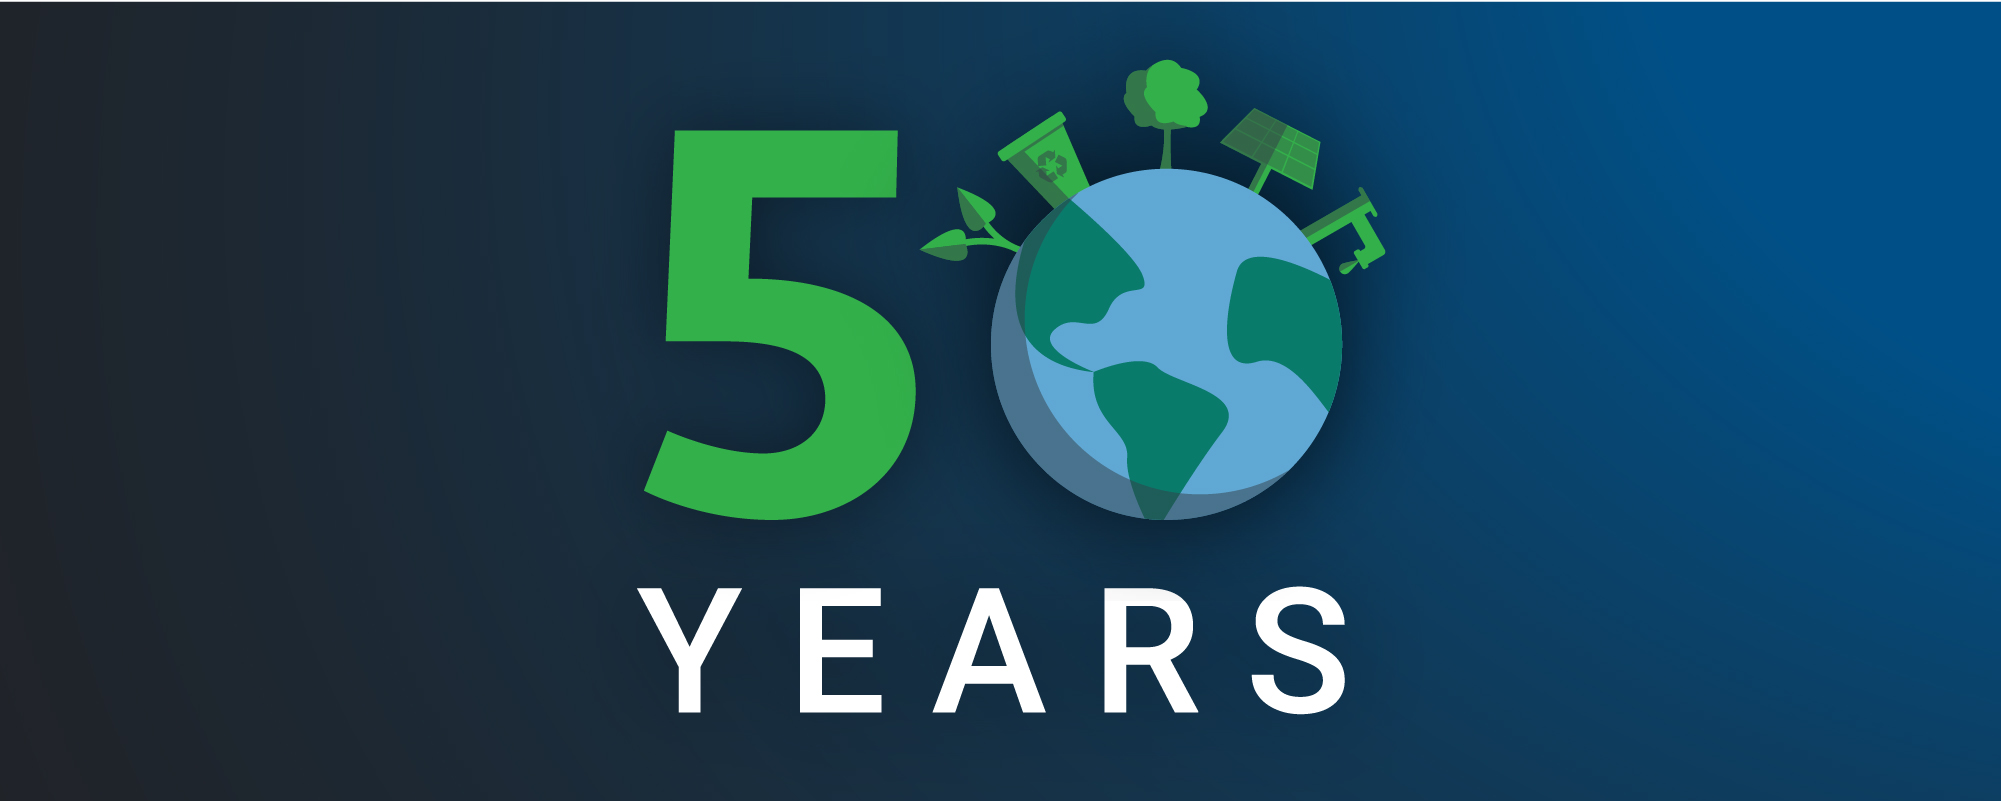 Earth Day 50 Years